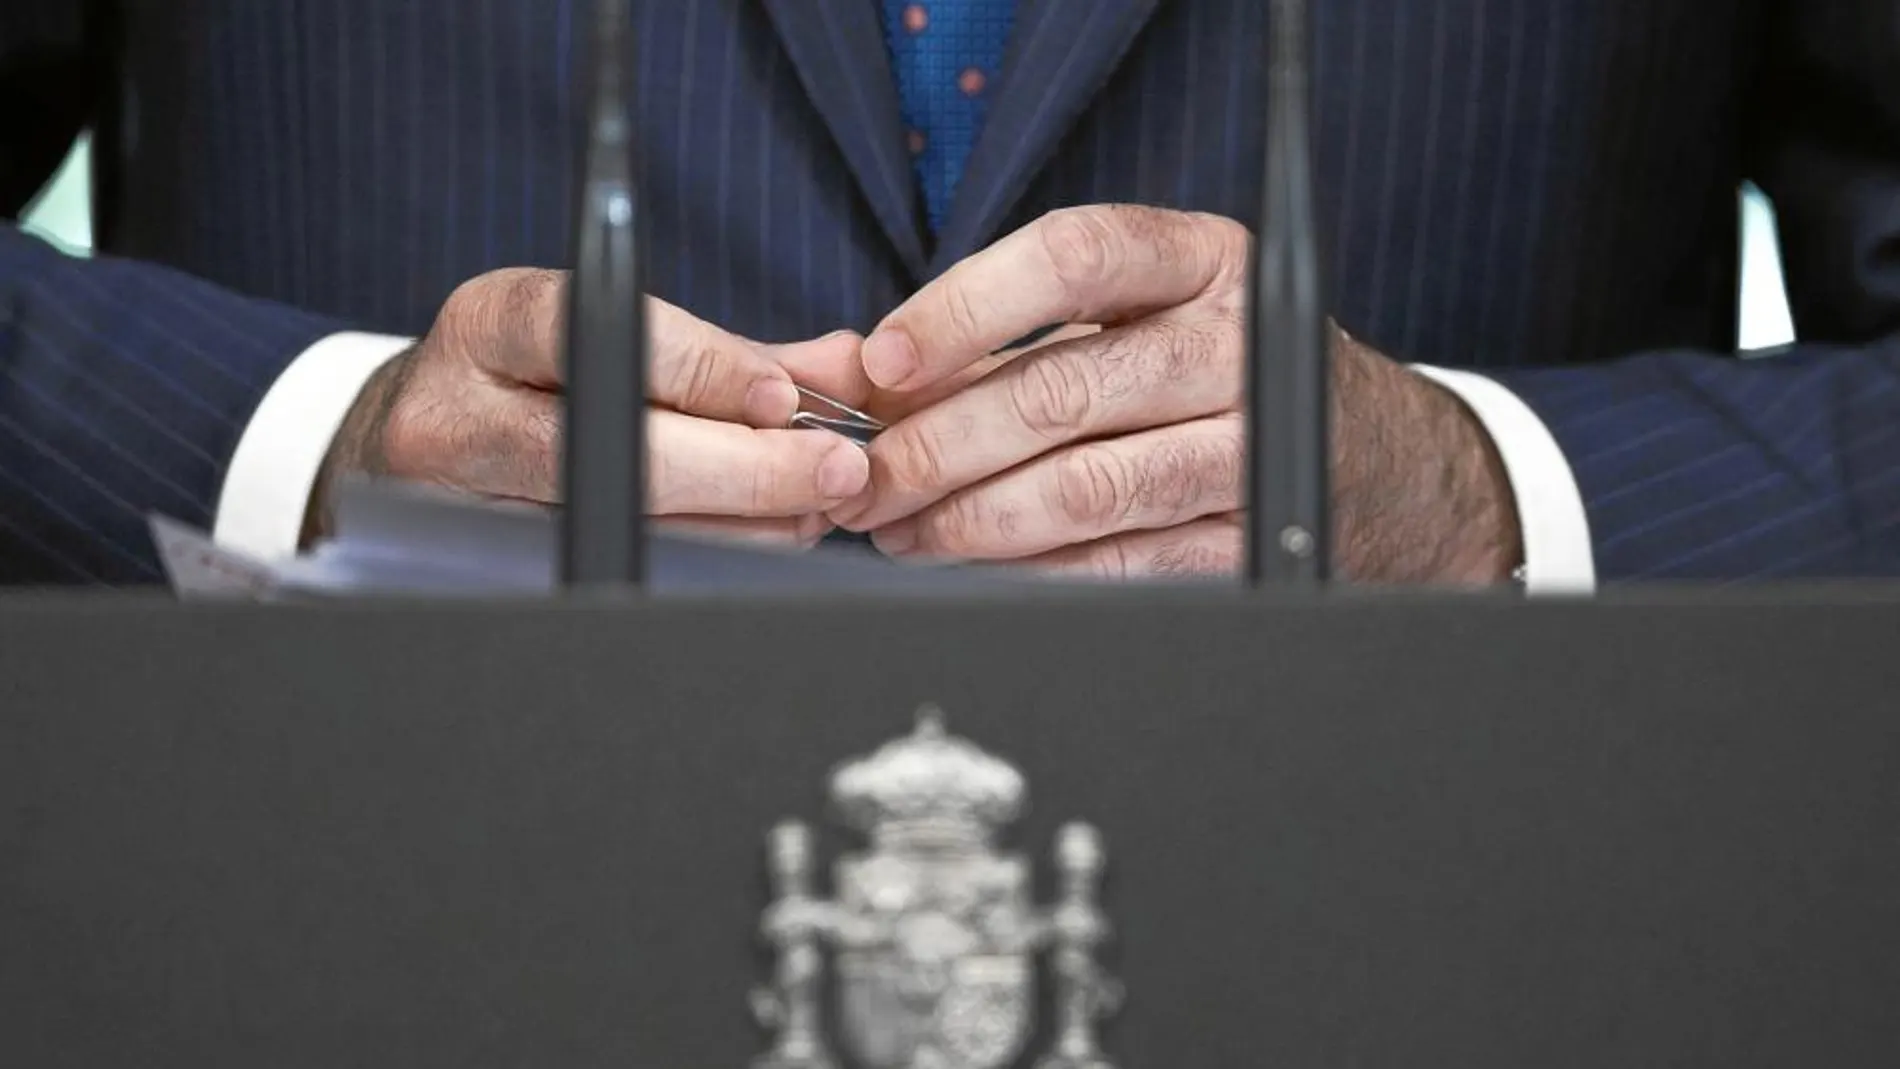 El presidente del Gobierno, Mariano Rajoy, comunicó en septiembre que la reforma no saldría adelante